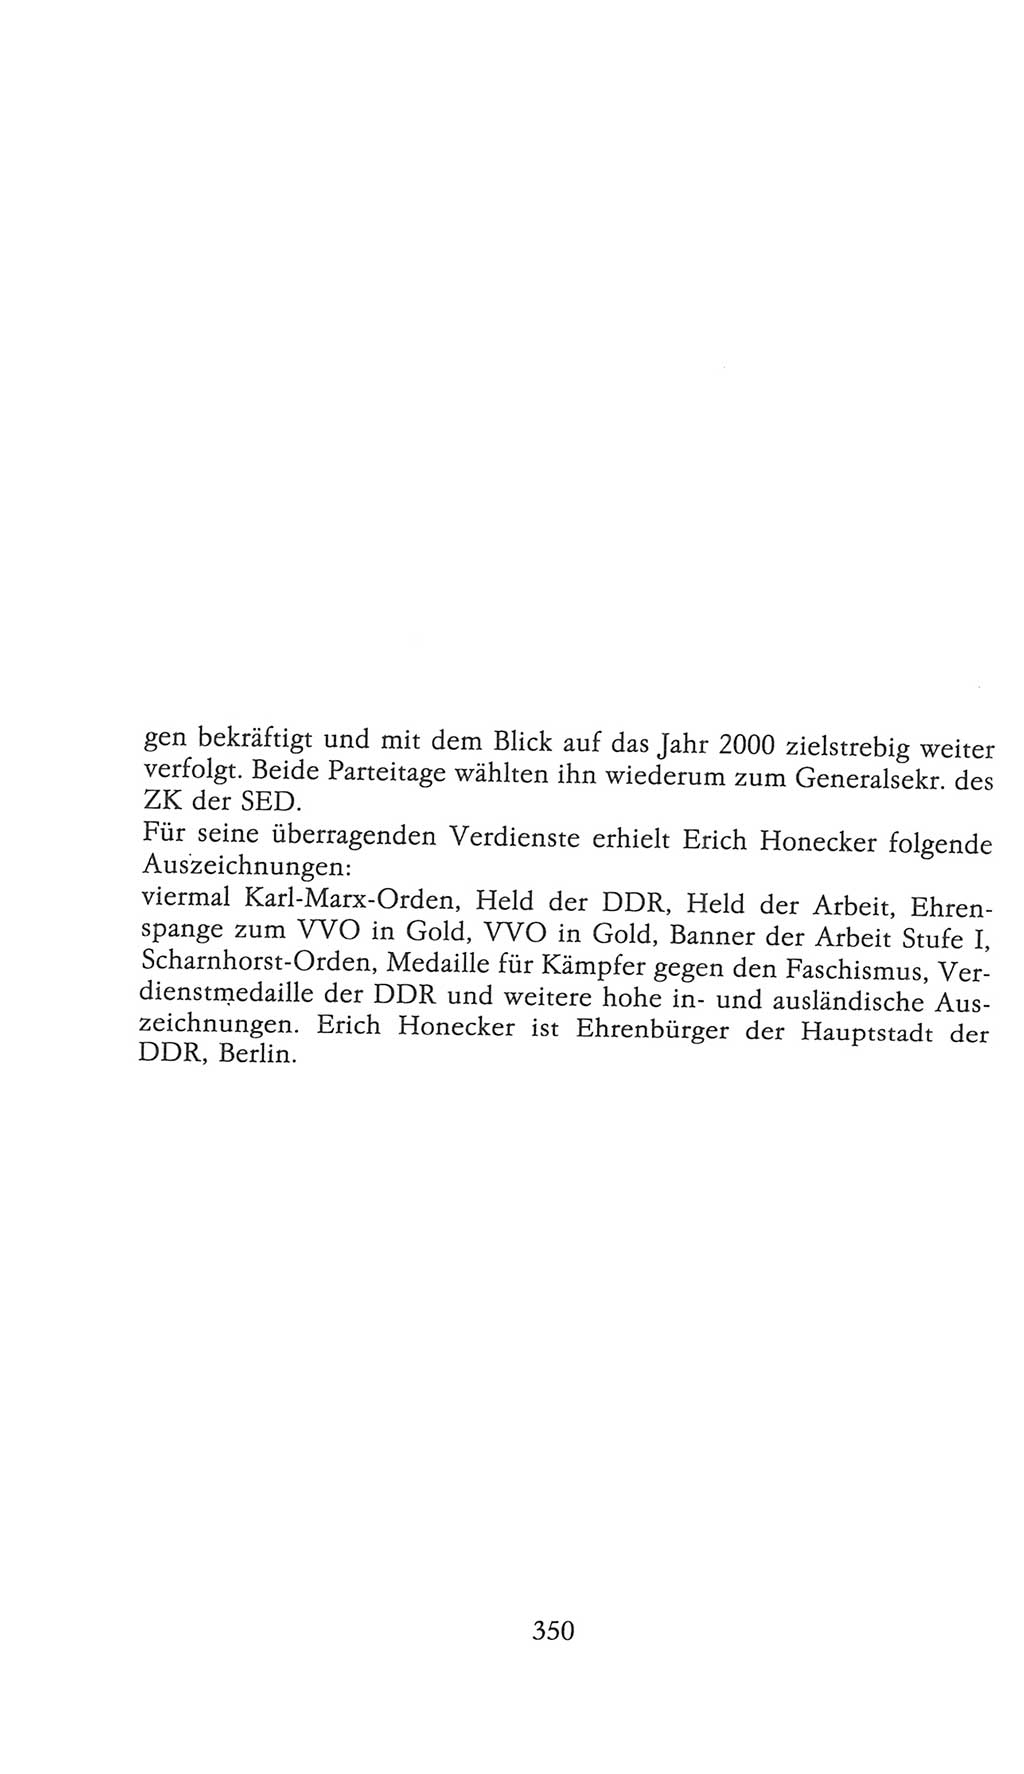 Volkskammer (VK) der Deutschen Demokratischen Republik (DDR), 9. Wahlperiode 1986-1990, Seite 350 (VK. DDR 9. WP. 1986-1990, S. 350)